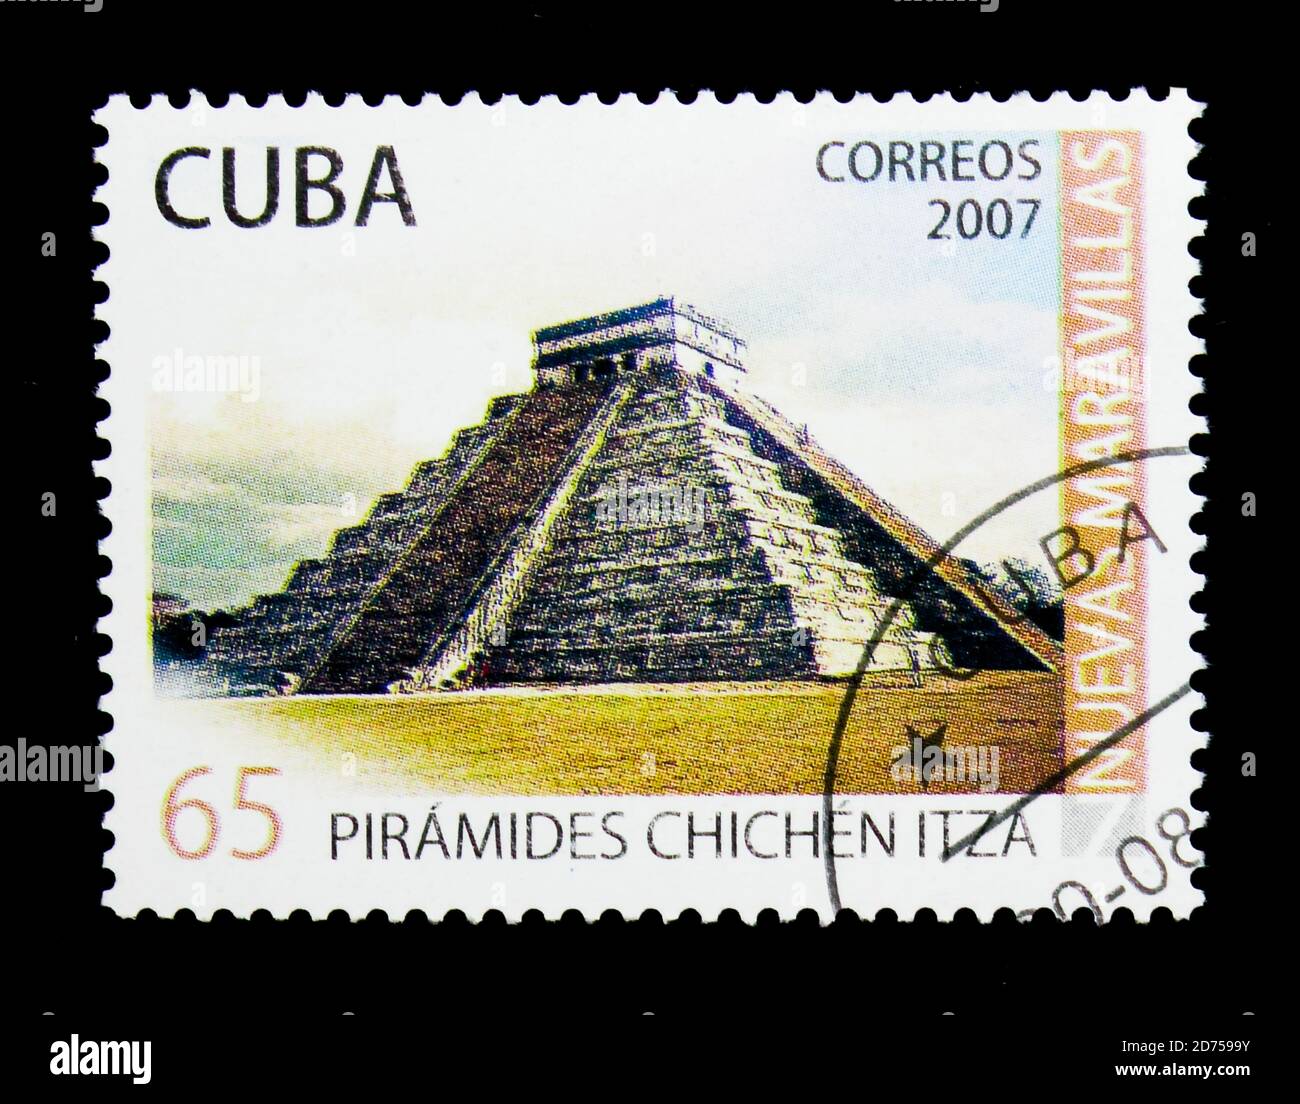 MOSCA, RUSSIA - 25 NOVEMBRE 2017: Un francobollo stampato a Cuba mostra le rovine di Chichen Itza, Messico, nuove meraviglie della serie mondiale, circa 2007 Foto Stock